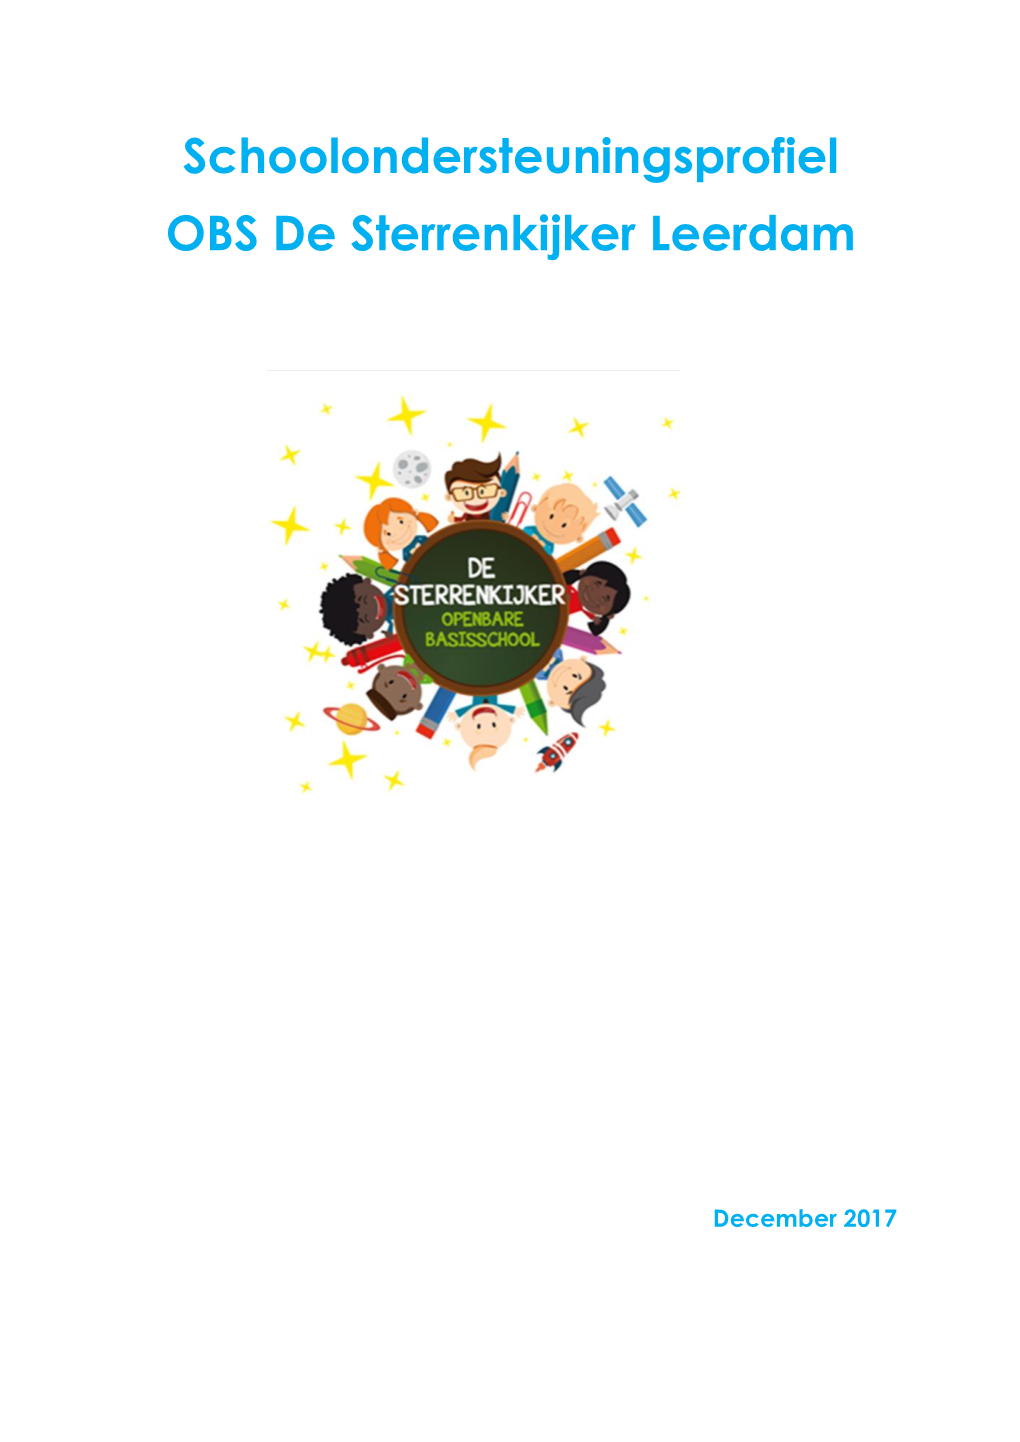 Schoolondersteuningsprofiel OBS De Sterrenkijker Leerdam